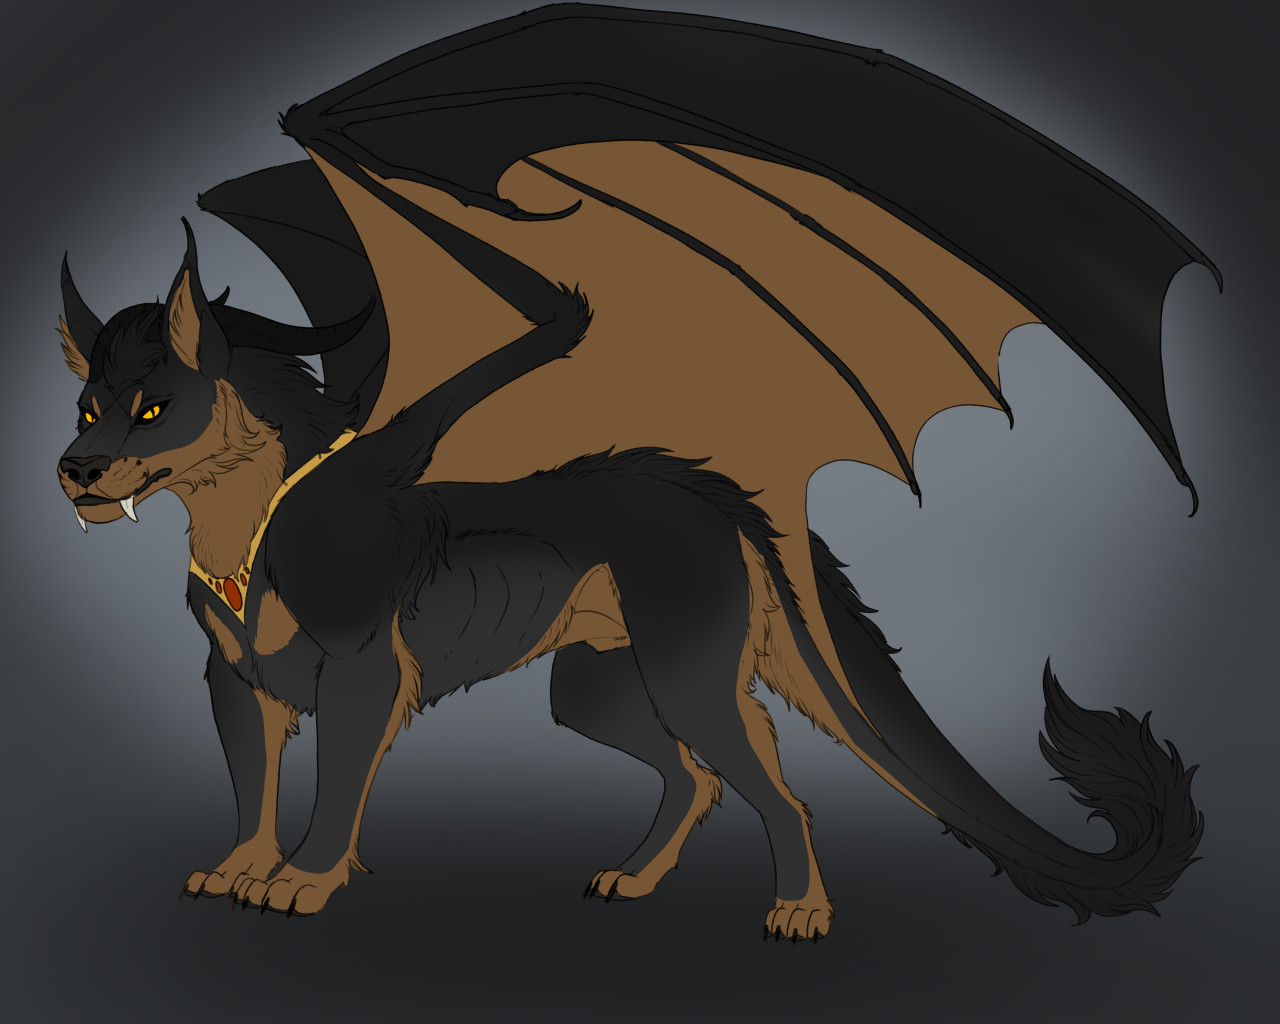 Niccolo wolf-dragon hybrid. 